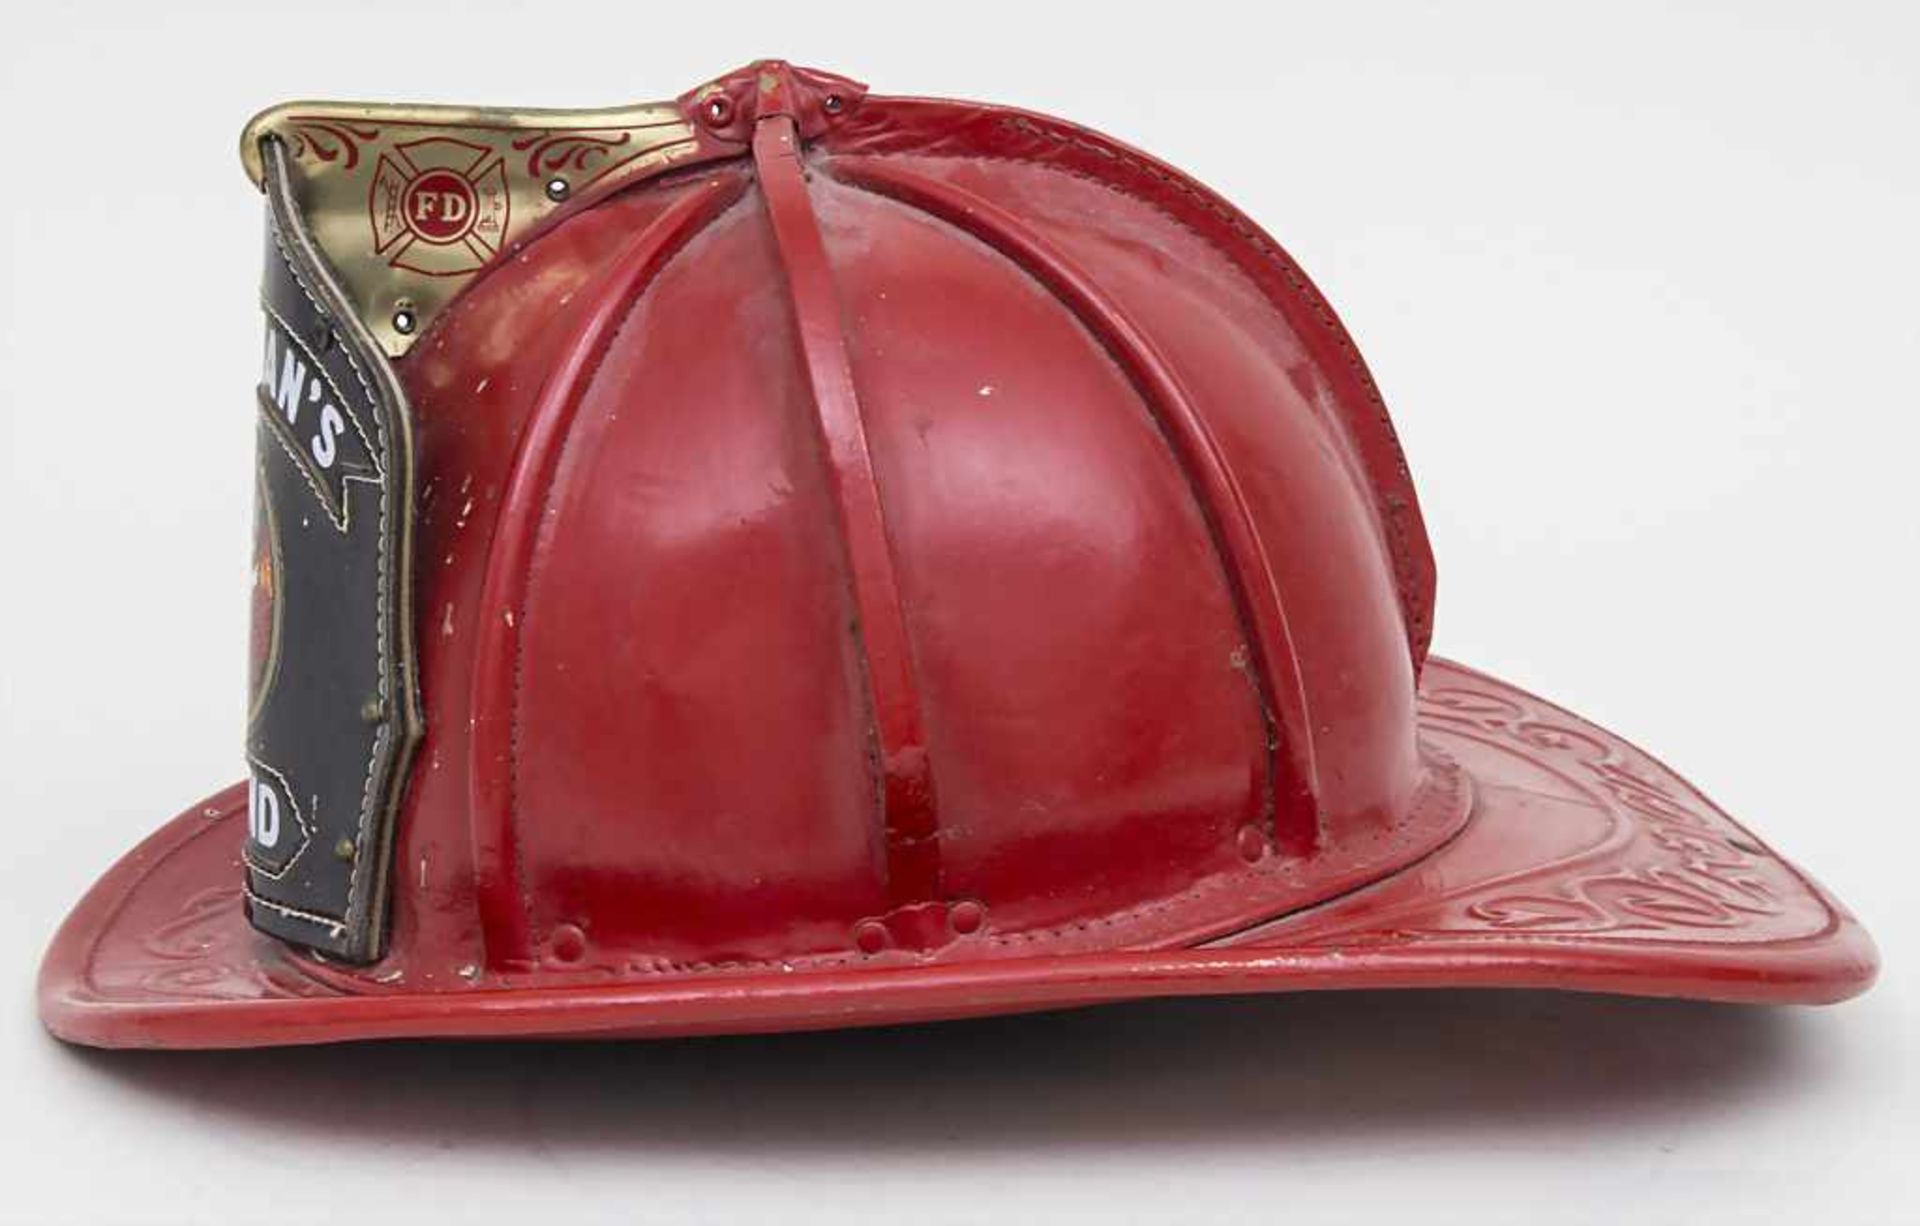 Reklame-Feuerwehrhelm / A promotion firefighter helmet, Cairns & Brothers, USA Material: - Bild 2 aus 3